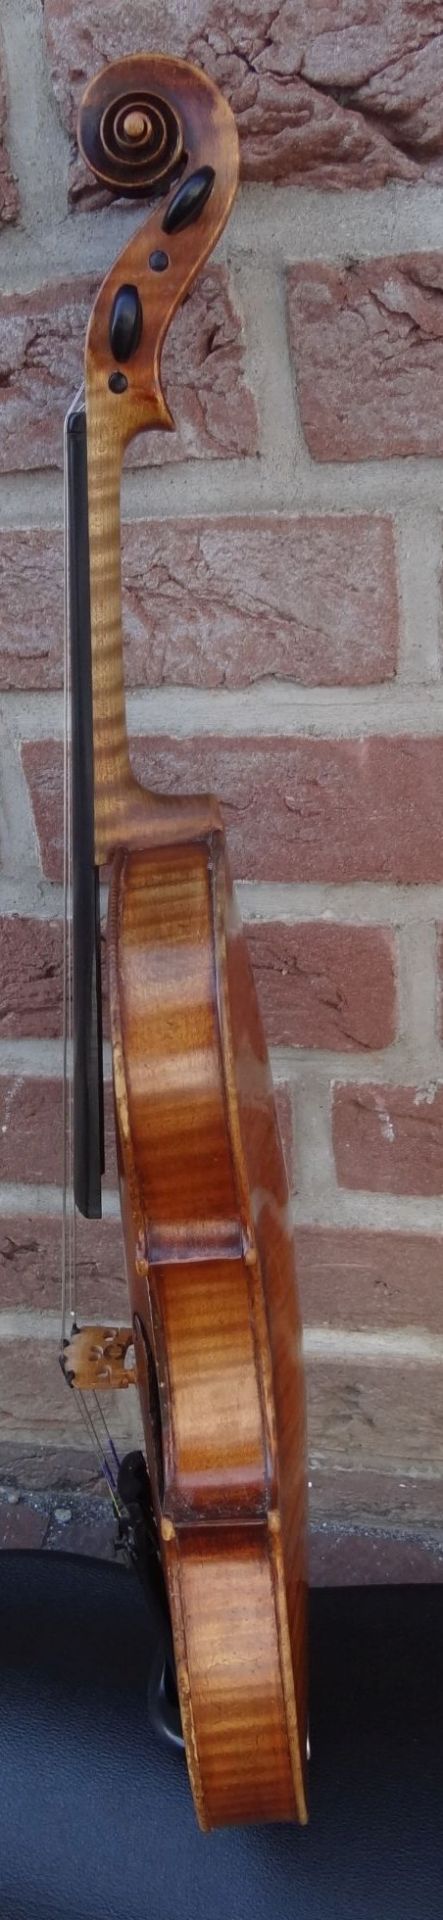 alte Geige im Koffer, innen Etikett "Ciovan Paolo Meggine", 19/20 Jhd?, L-62 cm, gut erhalten - Bild 6 aus 10